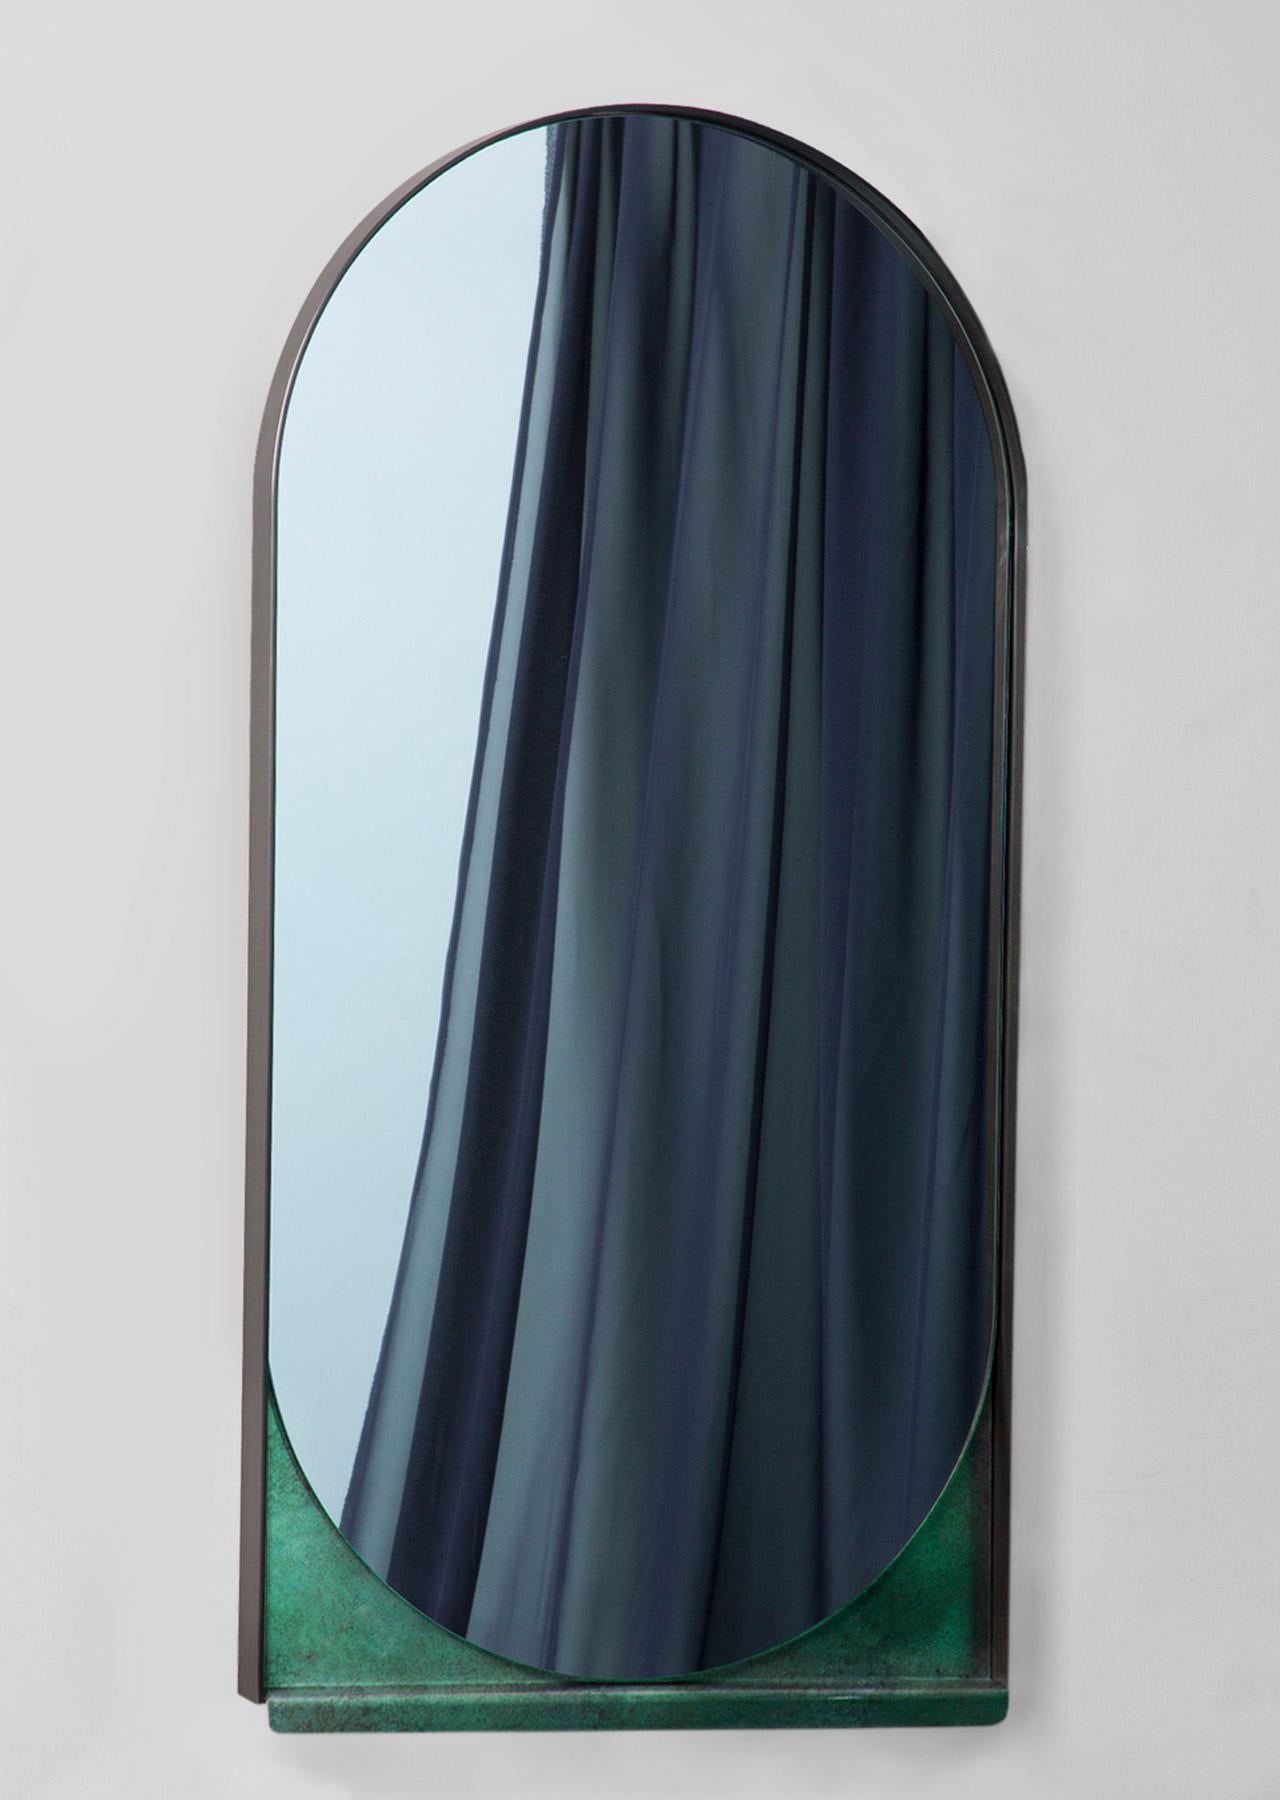 Einfachheit ist der Schlüssel zum Slip Mirror, dessen dünner Rahmen aus geschwärztem Edelstahl einen länglichen Spiegel zart hält. Eine kontrastierende Grünspanplatte schiebt sich darunter hervor und deutet auf darunter liegende Schichten hin.
 